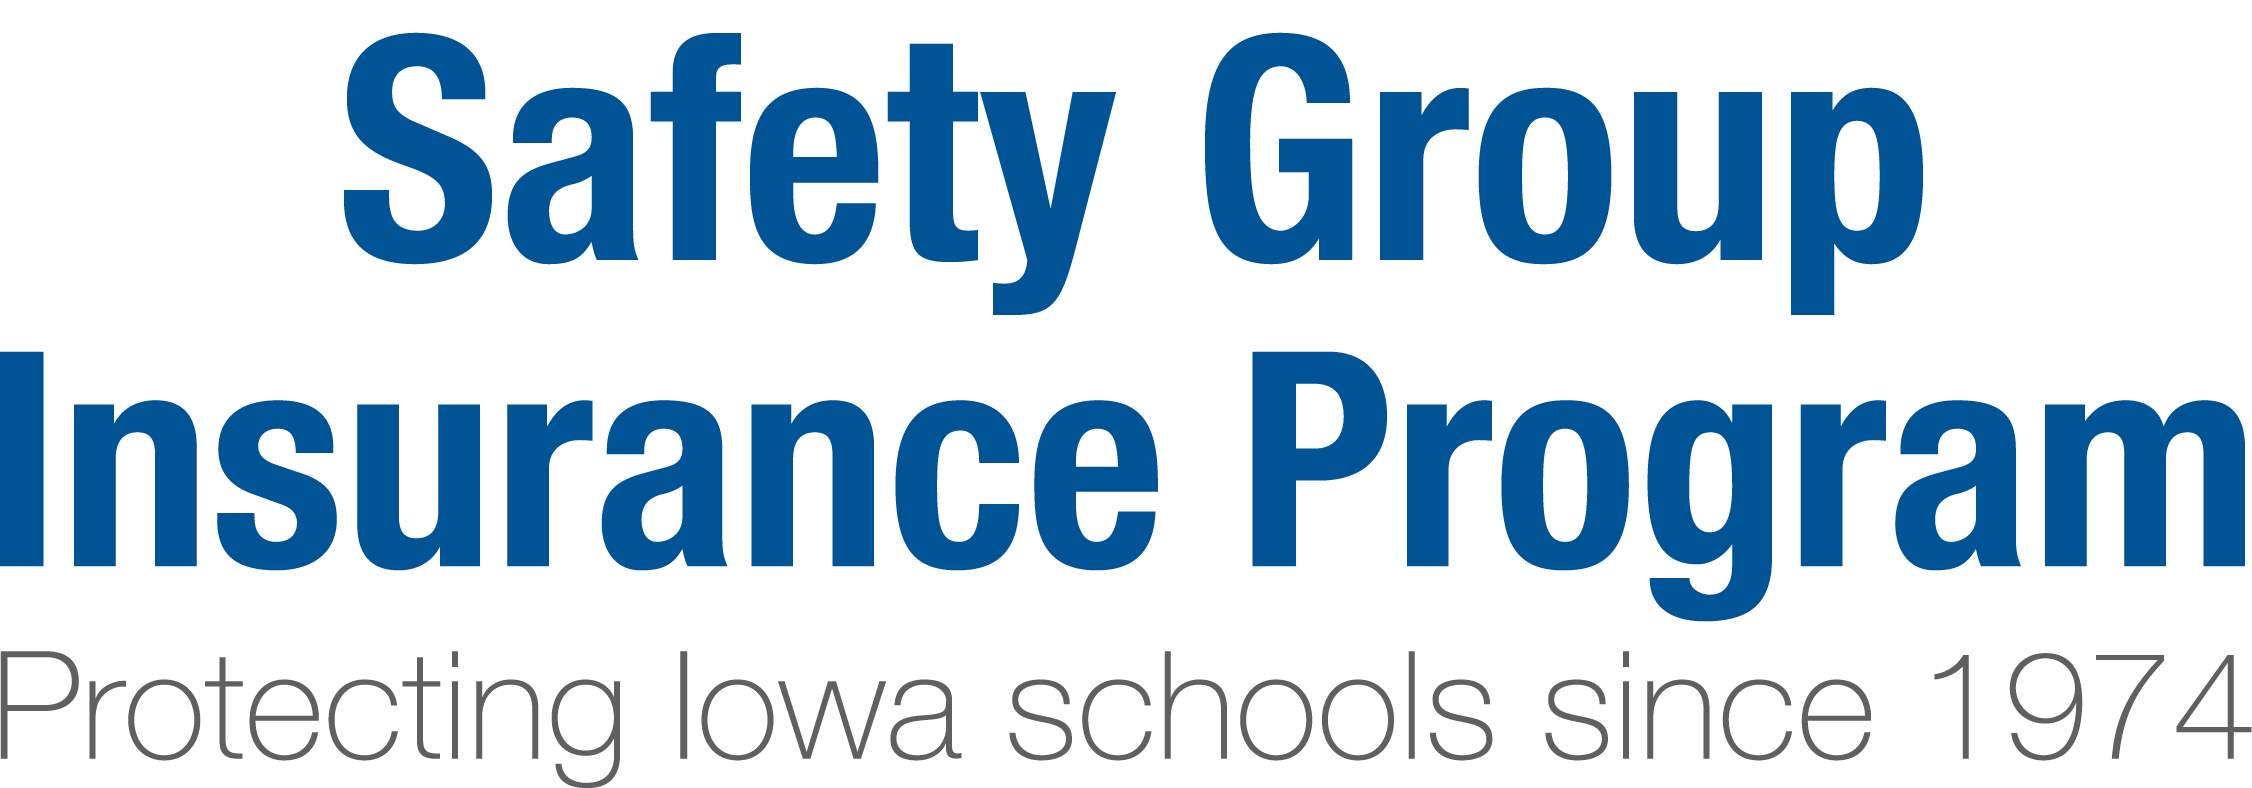 Safety Group Insurance Program logo